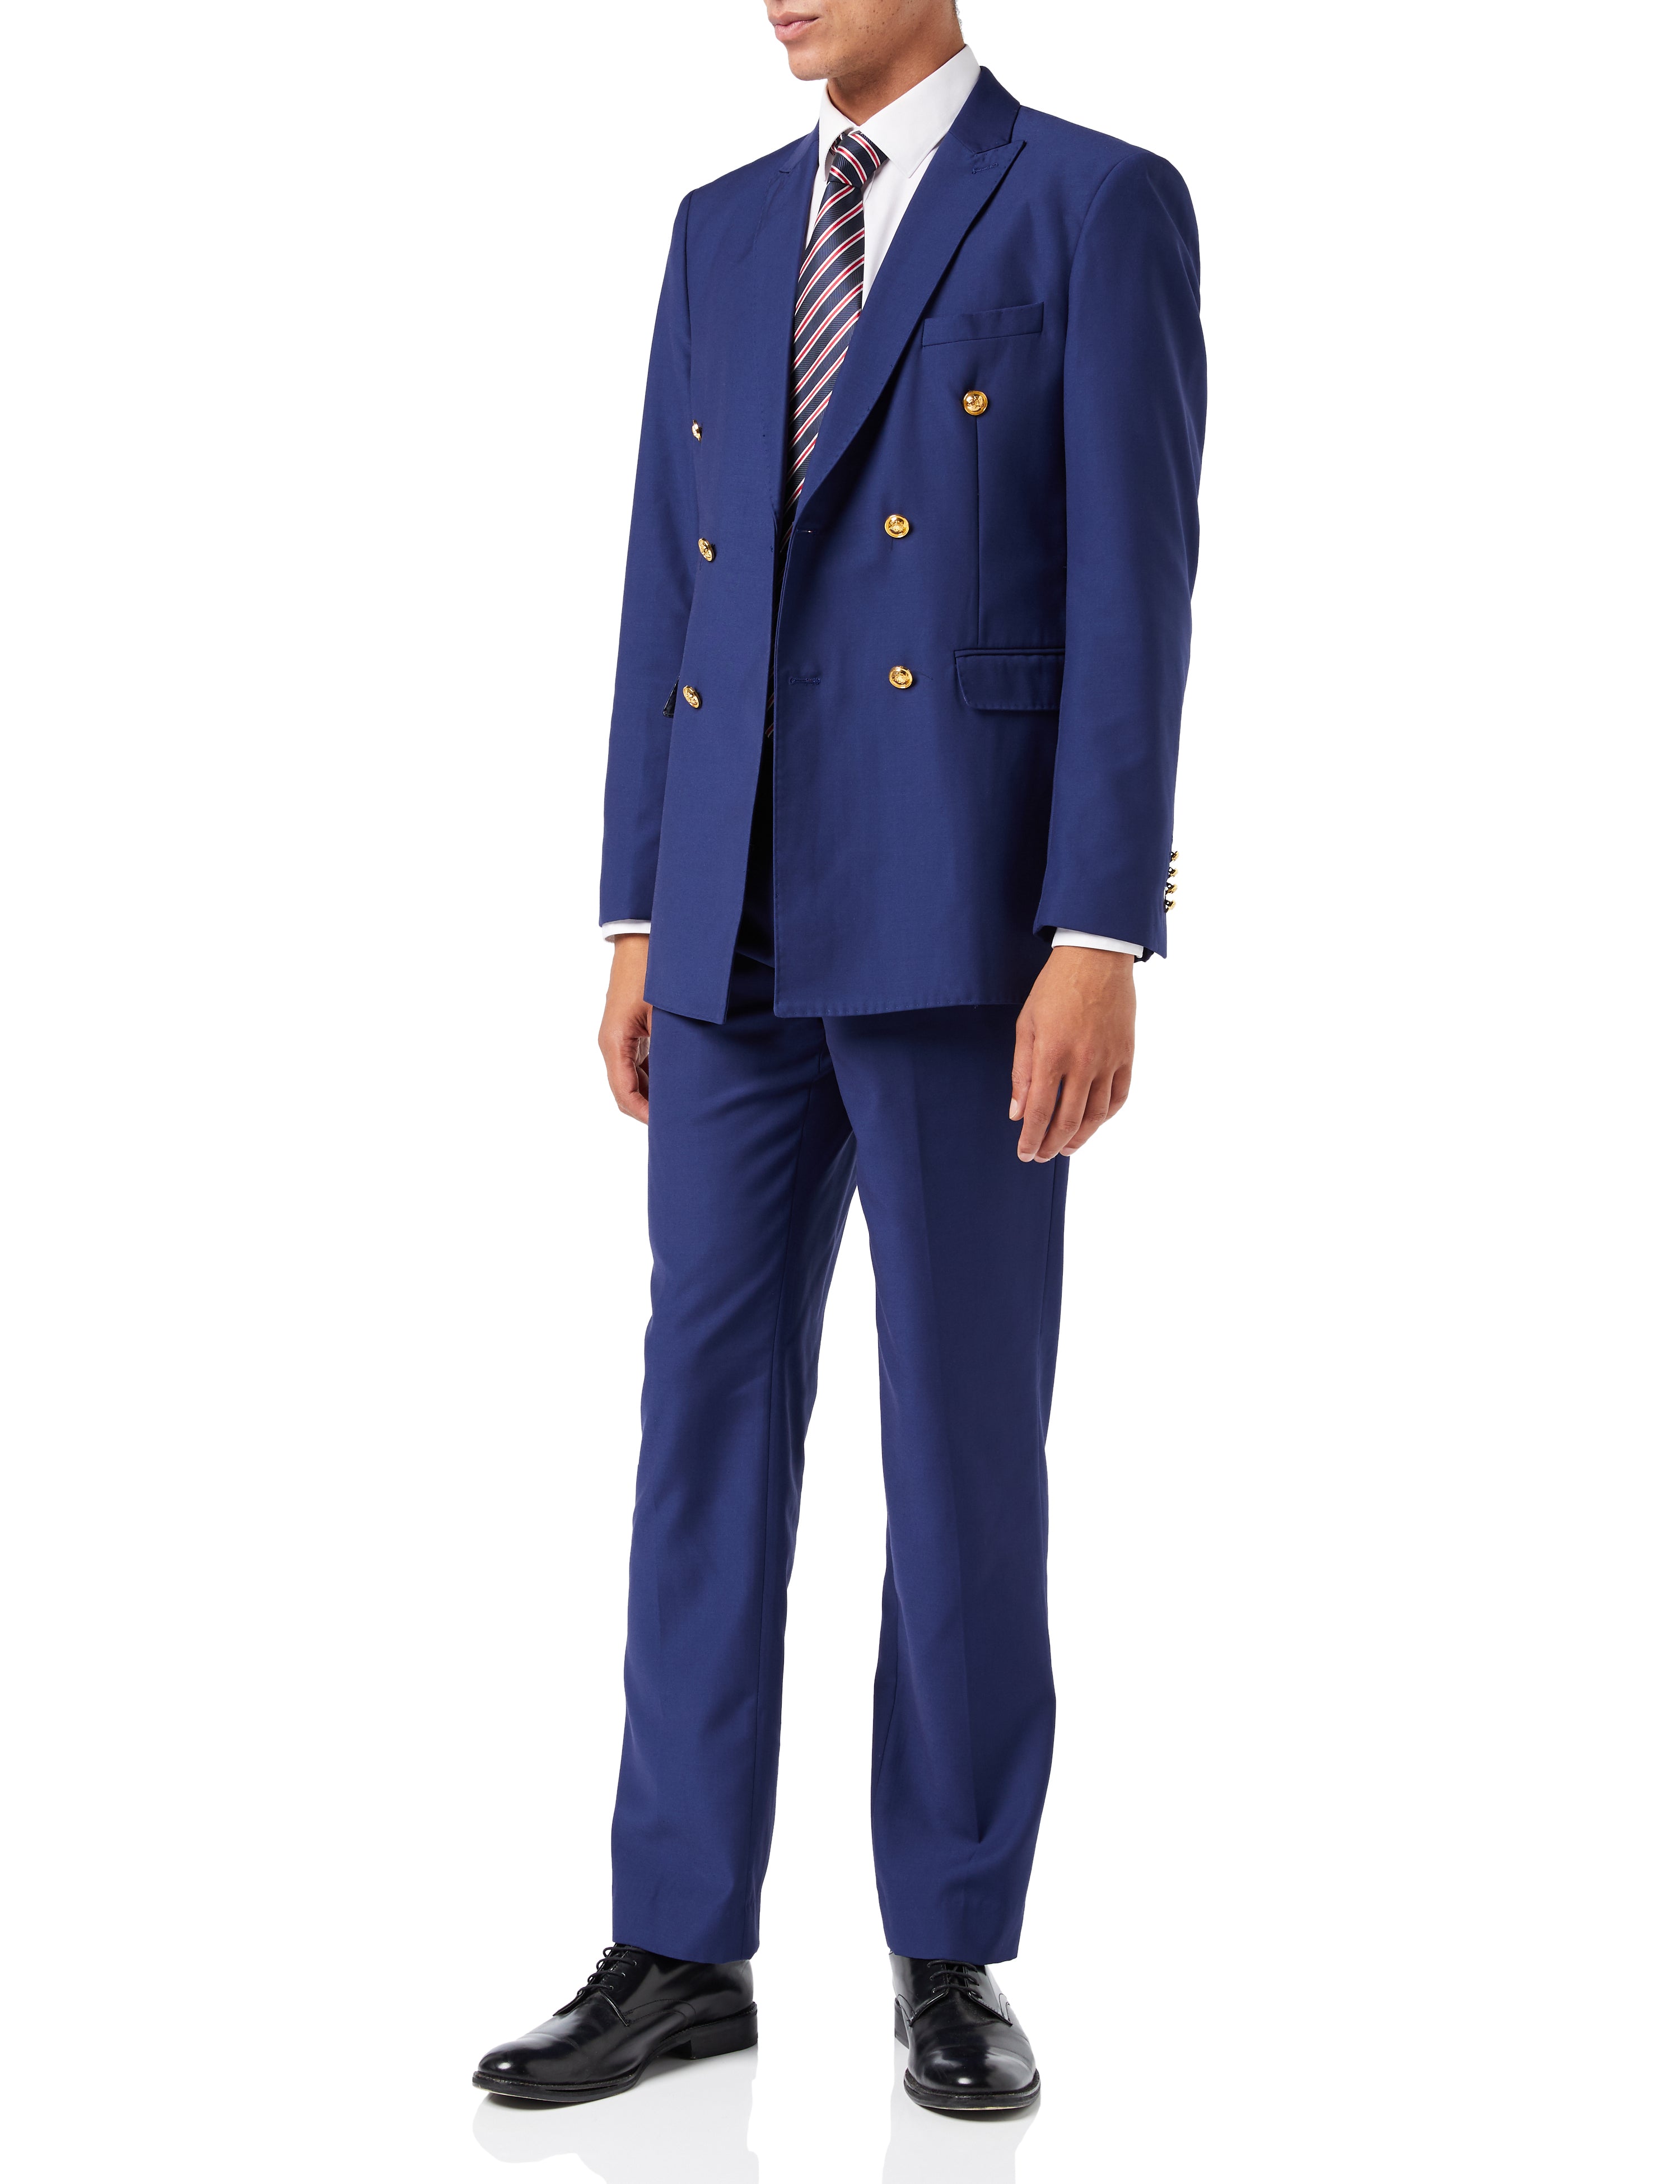 Men Suit 2 Piece, Sky Blue Suits For Men, Slim fit Suits, Tuxedo Suits,  Dinner Suits, Wedding Groom suits, Bespoke For Men -  Portugal